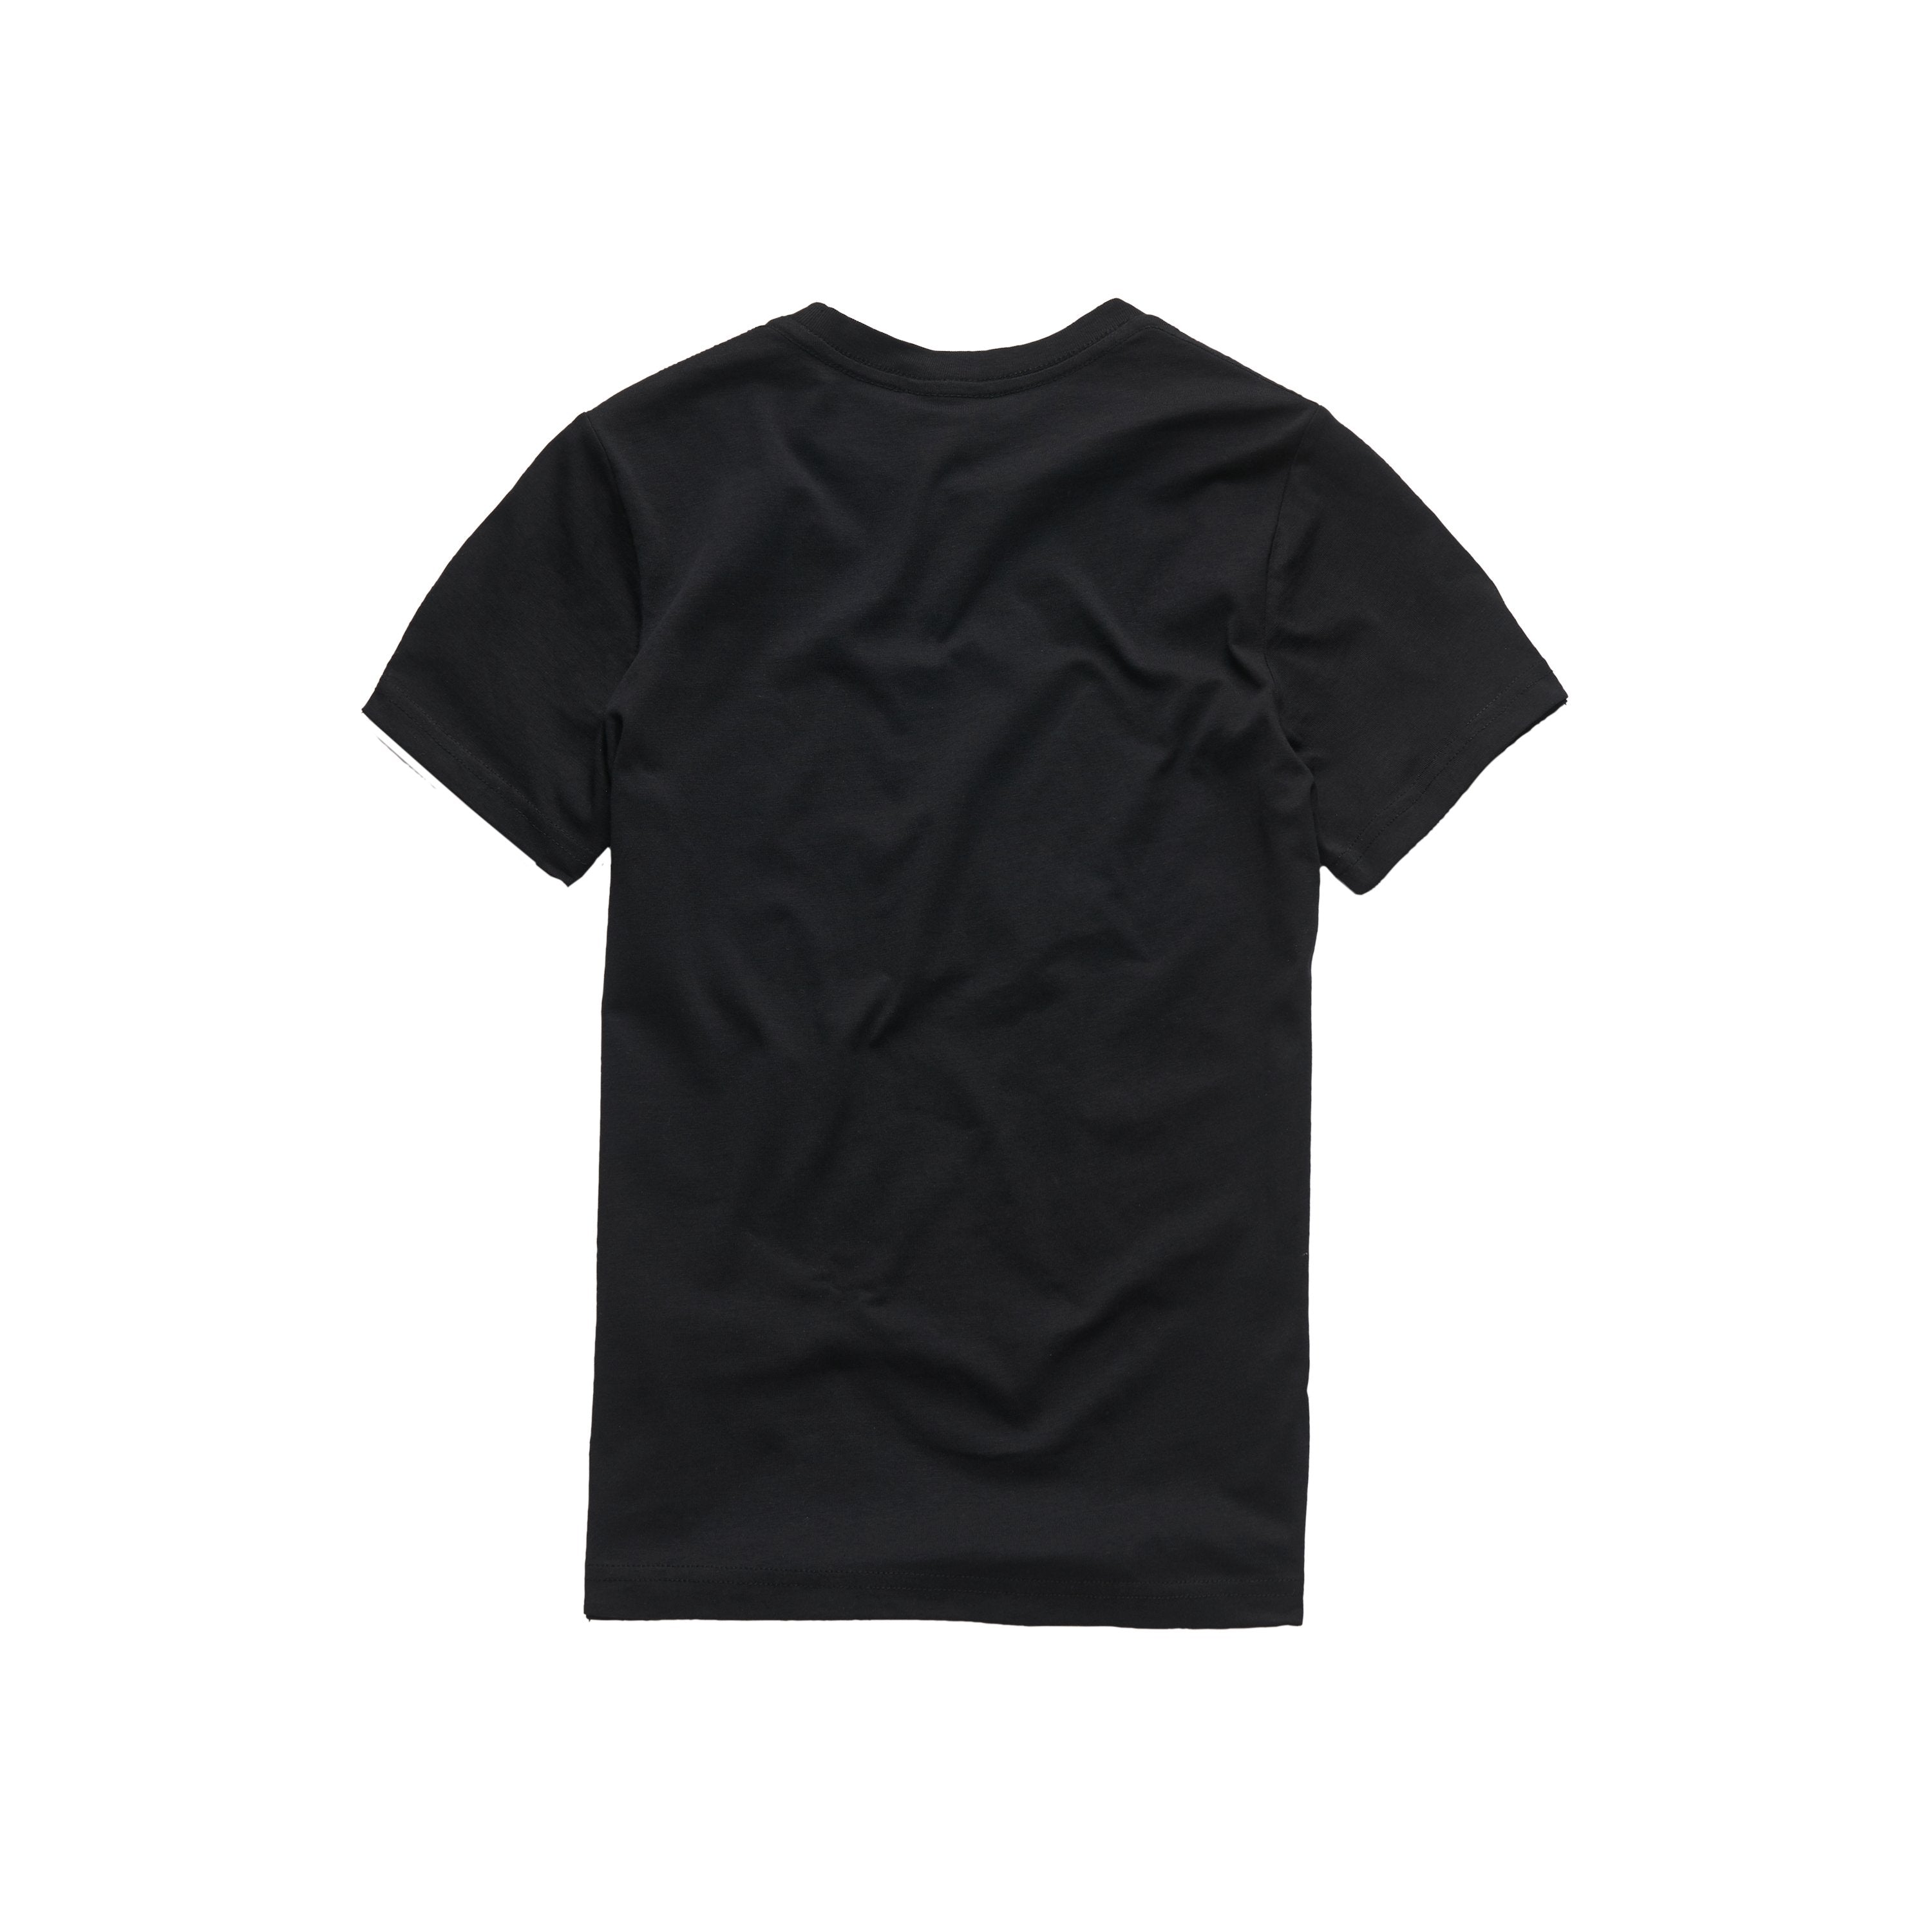 Jongens Tee Shirt van G-Star Raw in de kleur Black in maat 128.